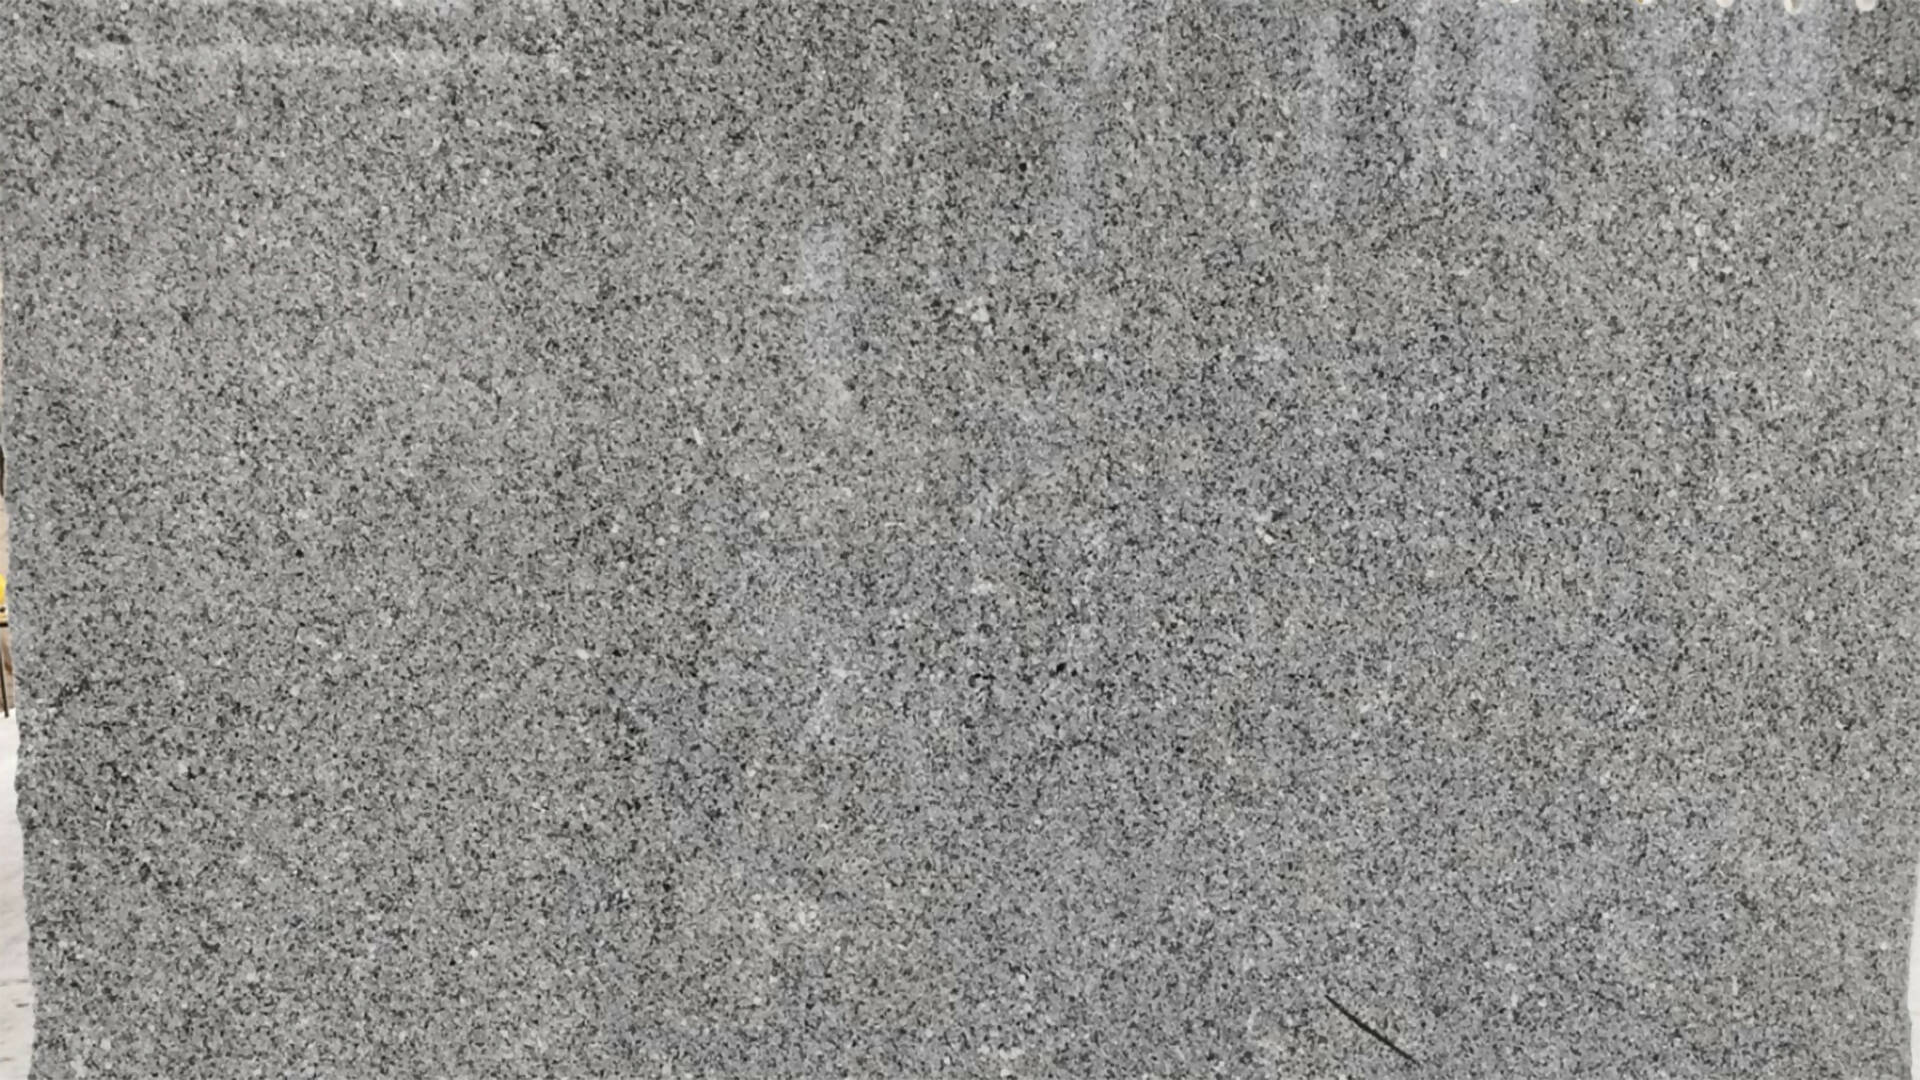 AZUL PLATINO GRANITE,Granite,Worldwide Stone Ltd,www.work-tops.com